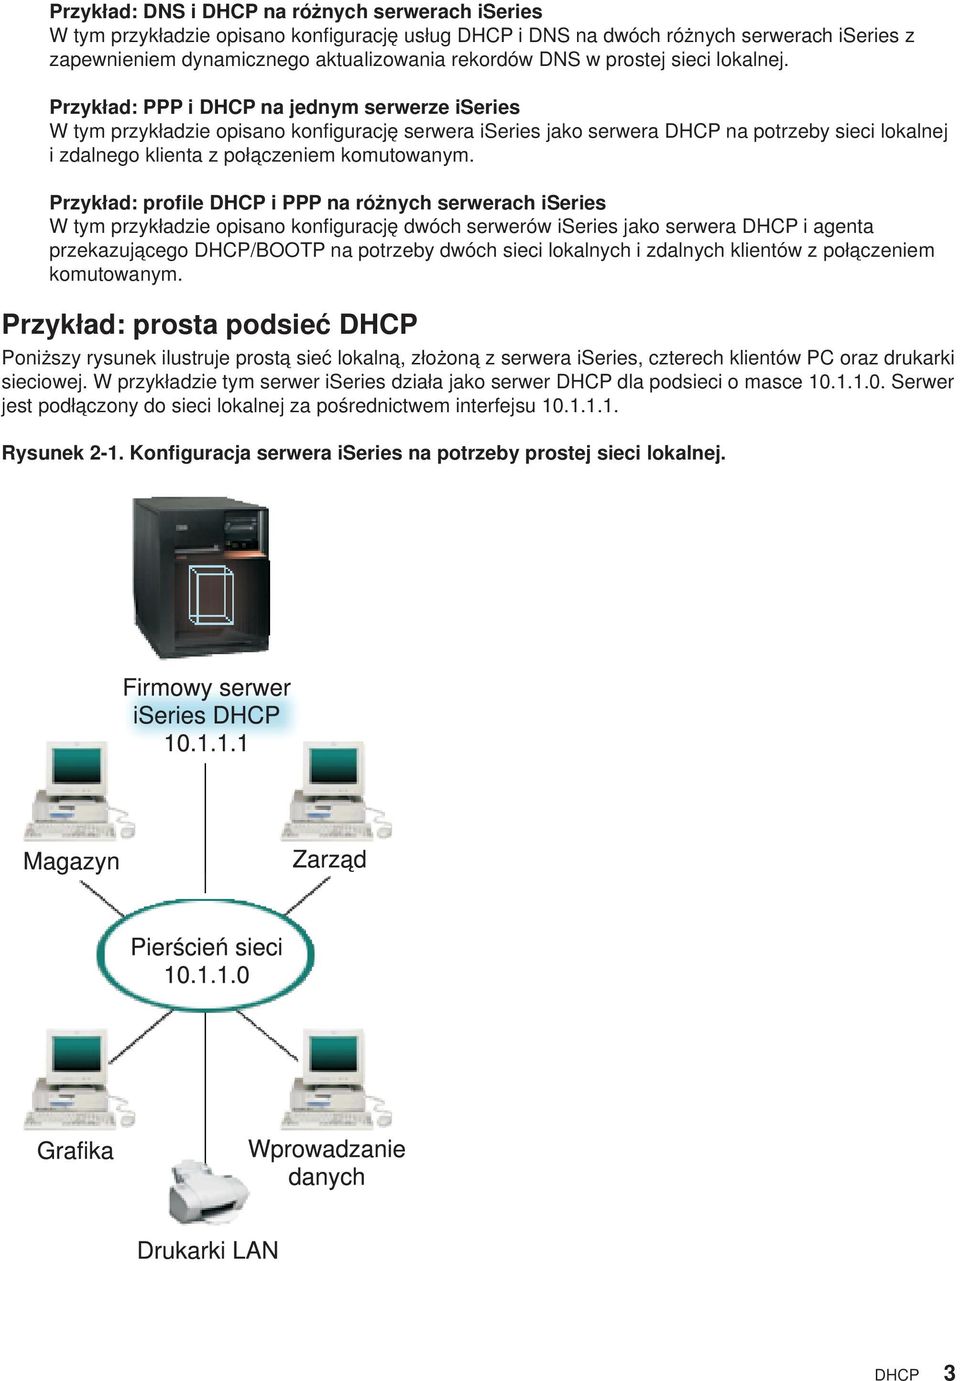 Przykład: PPP i DHCP na jednym serwerze iseries W tym przykładzie opisano konfigurację serwera iseries jako serwera DHCP na potrzeby sieci lokalnej i zdalnego klienta z połączeniem komutowanym.